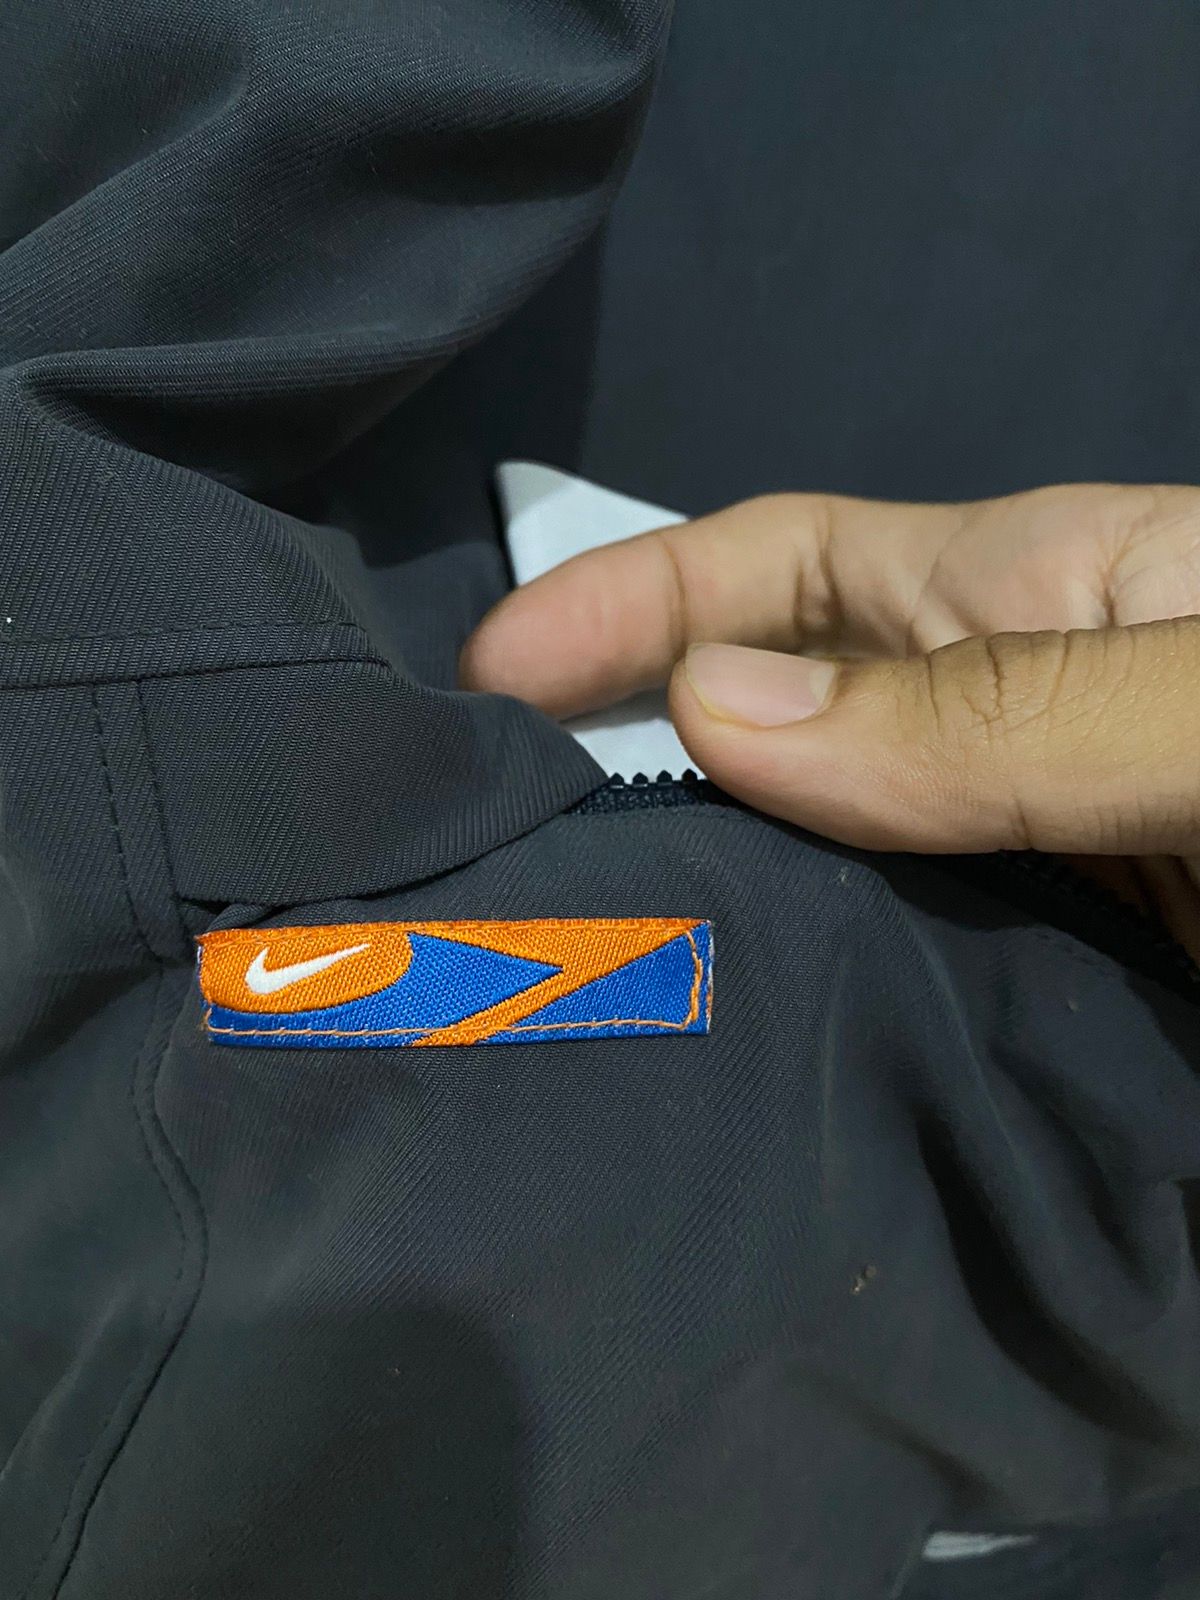 Nike Pullover Anorak Hoodie Jacket Nice Design - 8